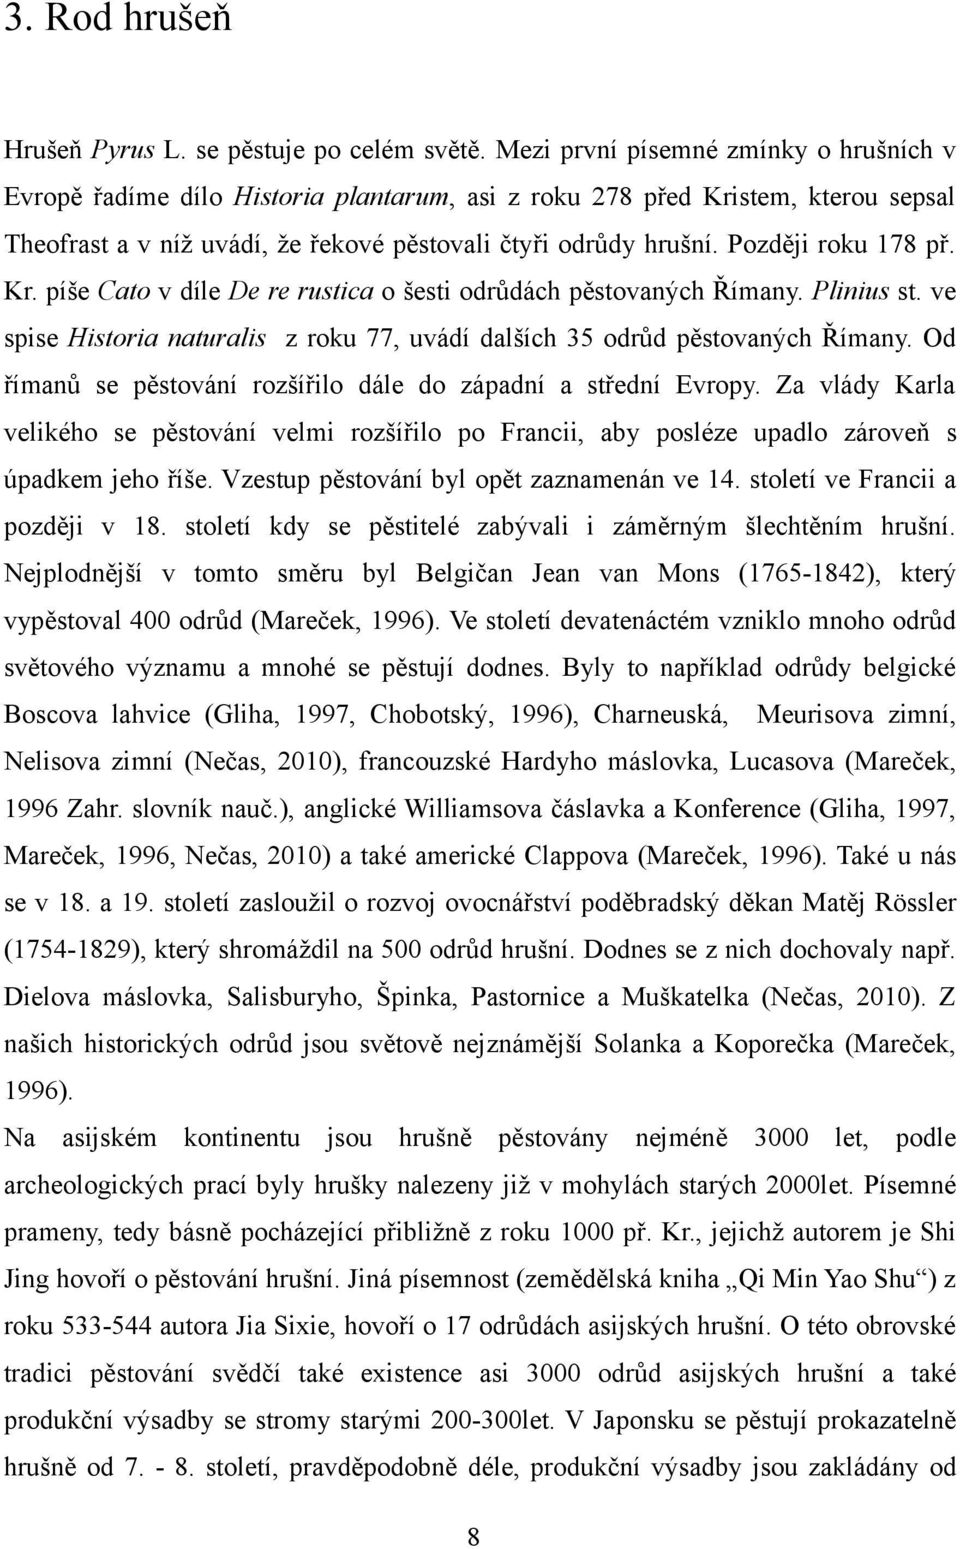 Později roku 178 př. Kr. píše Cato v díle De re rustica o šesti odrůdách pěstovaných Římany. Plinius st. ve spise Historia naturalis z roku 77, uvádí dalších 35 odrůd pěstovaných Římany.